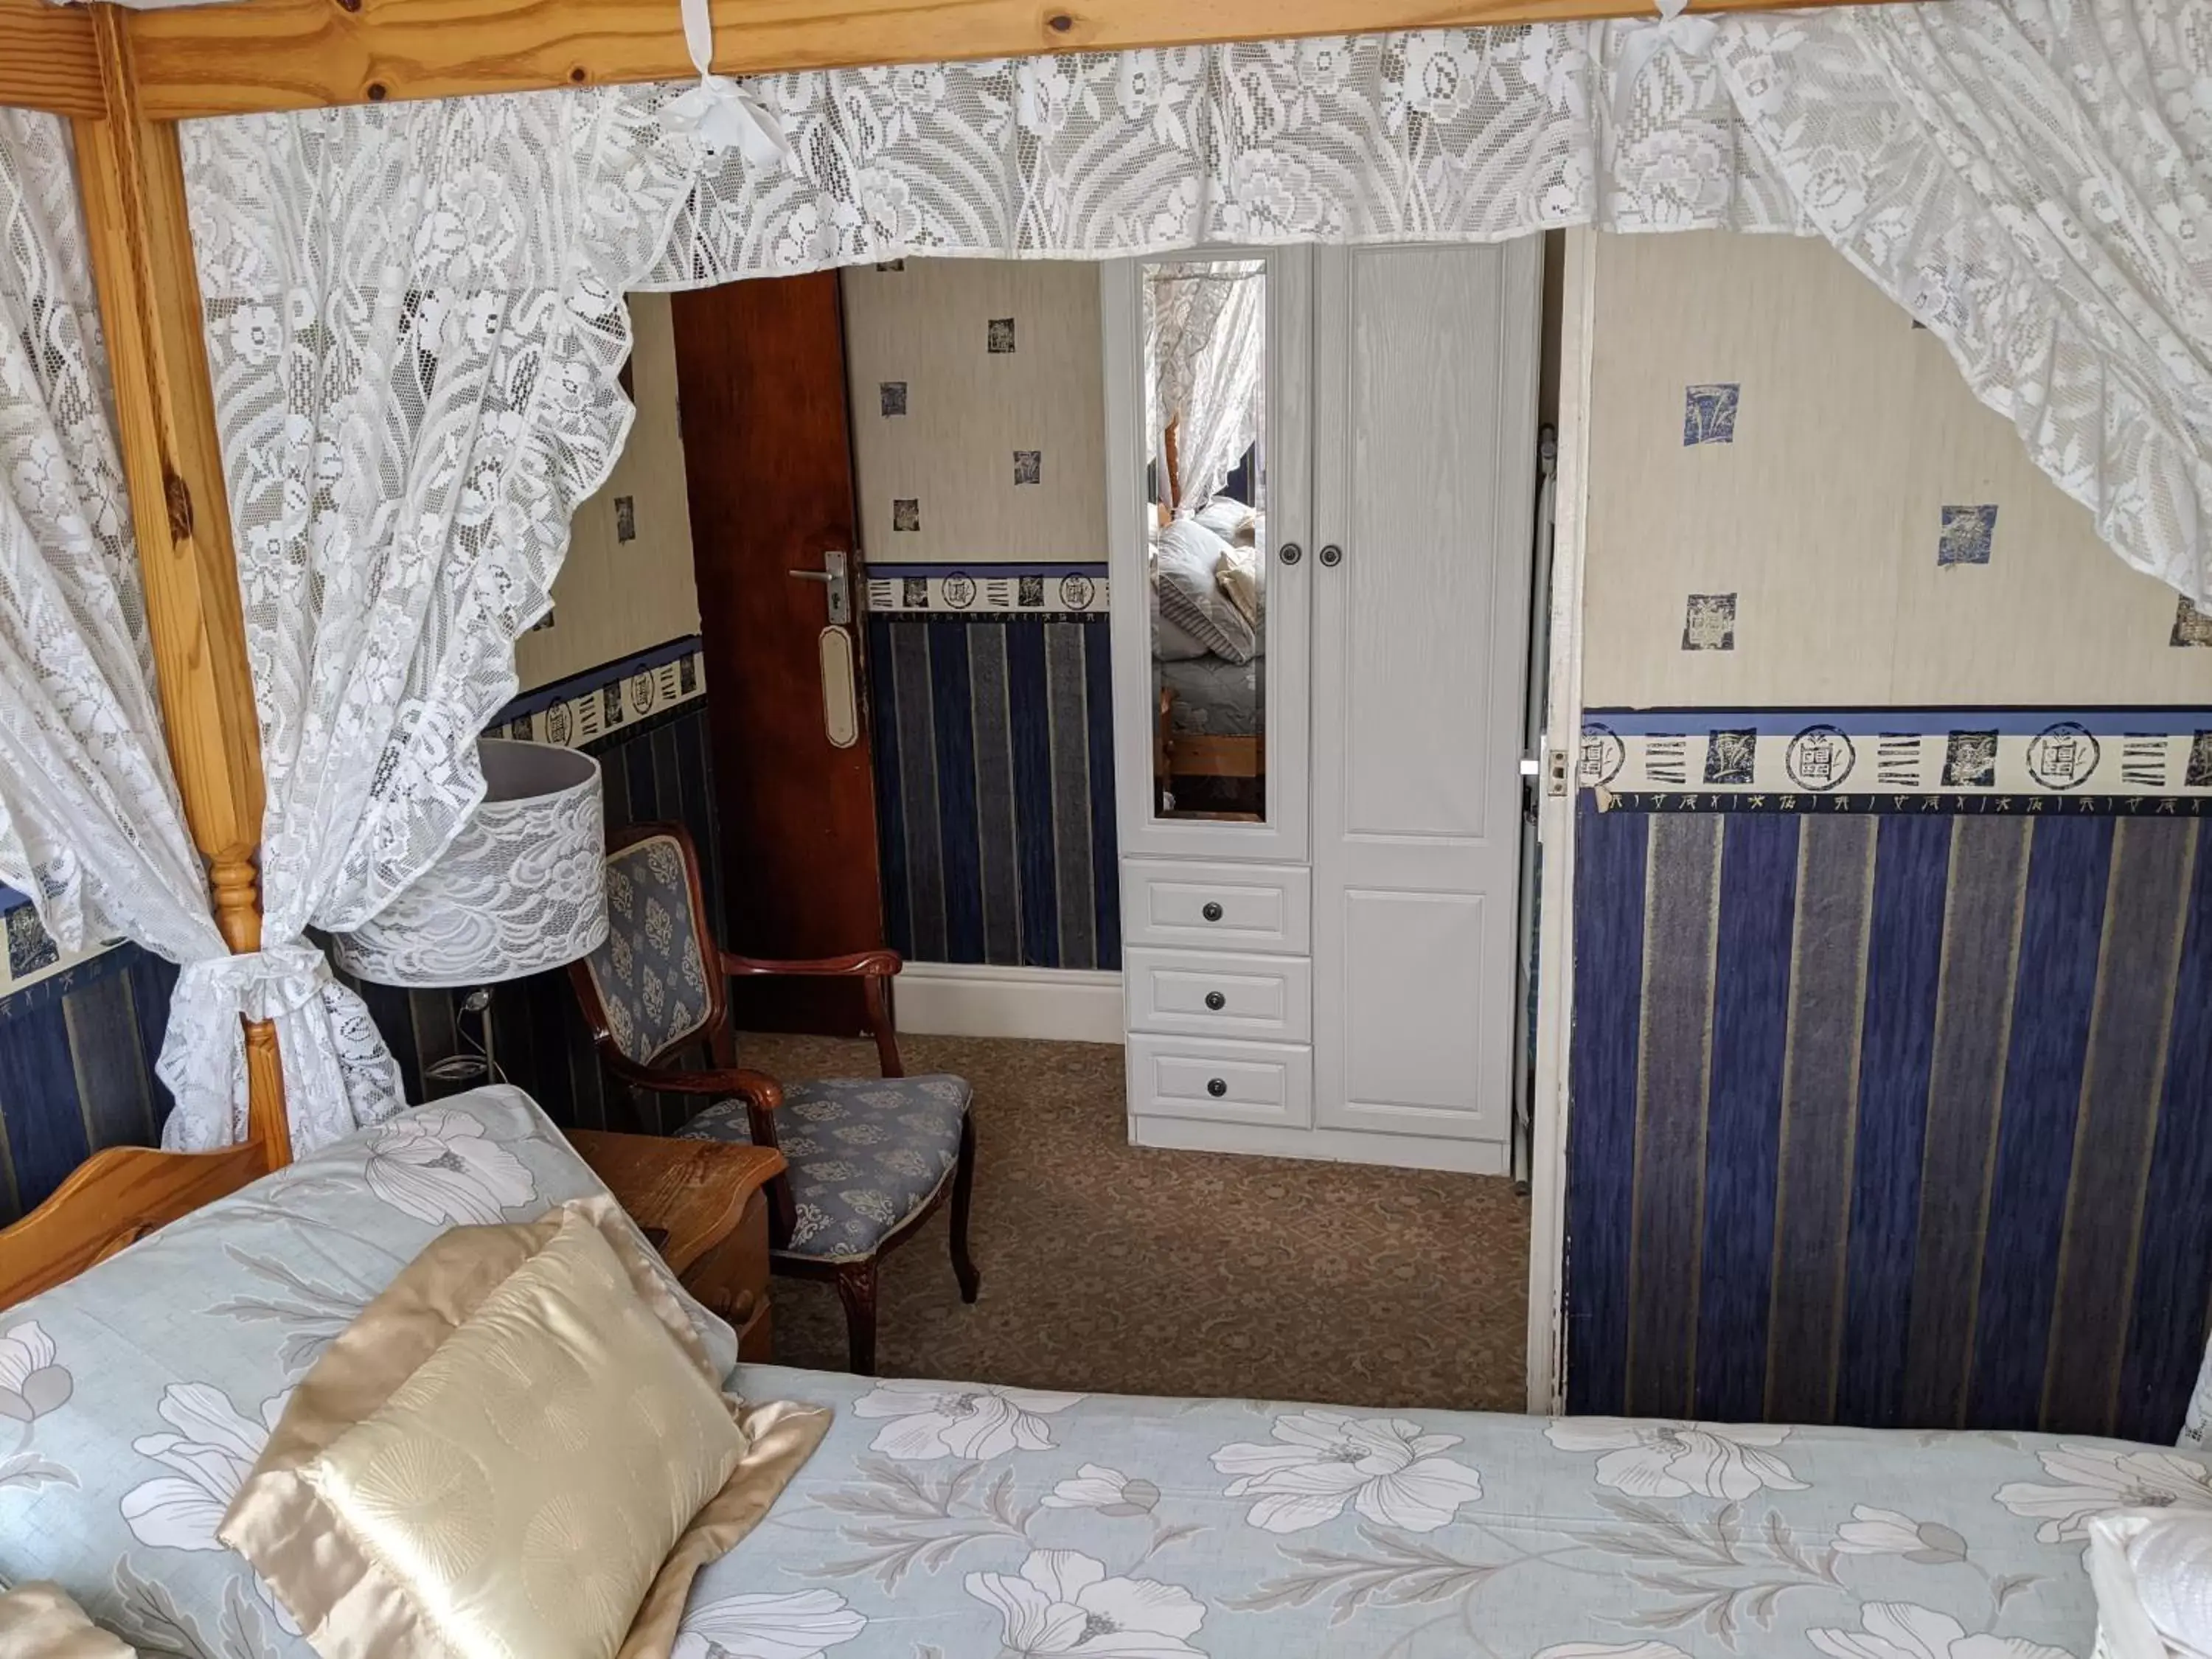 Bedroom in The New Guilderoy Hotel